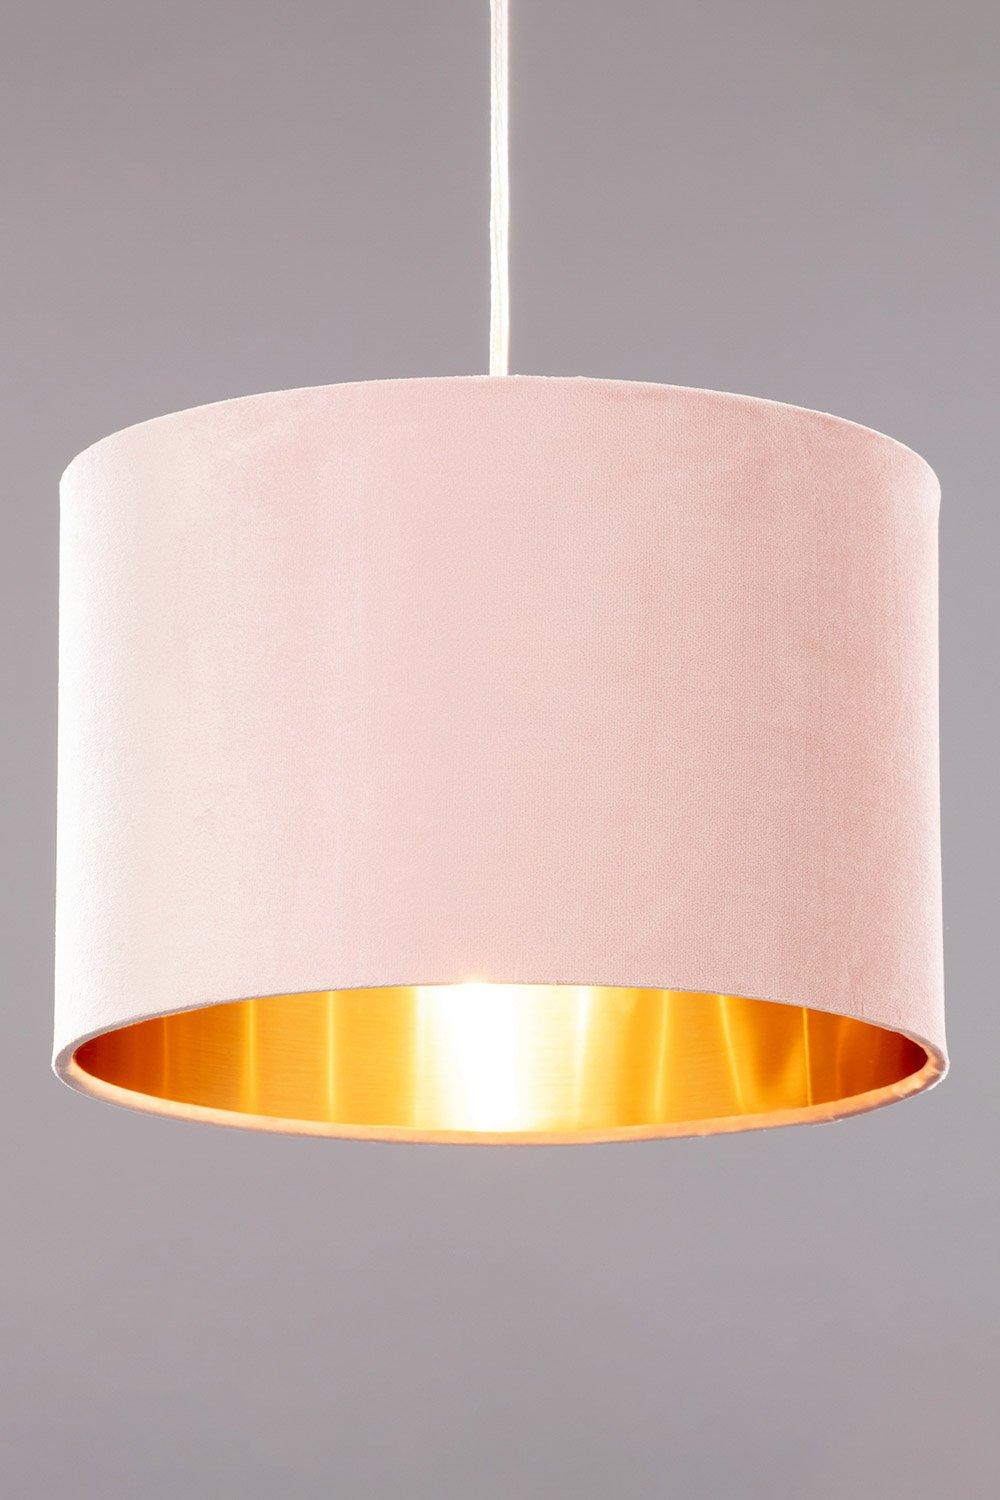 BHS Lighting Velvet Easy Fit Light Shade|pink